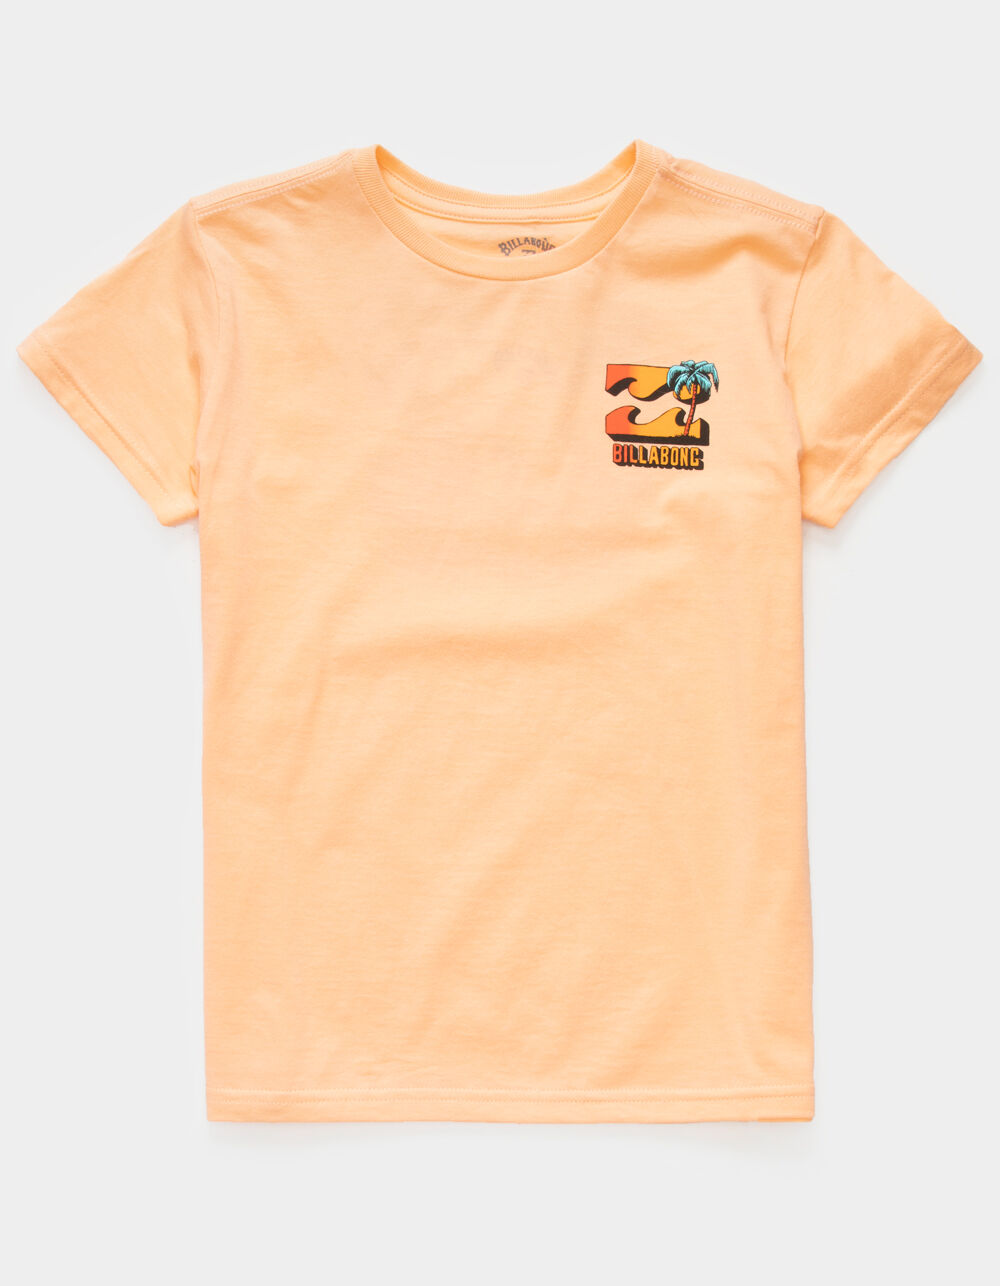 BILLABONG BBTV Little Boys T-Shirt (4-7) - PEACH | Tillys